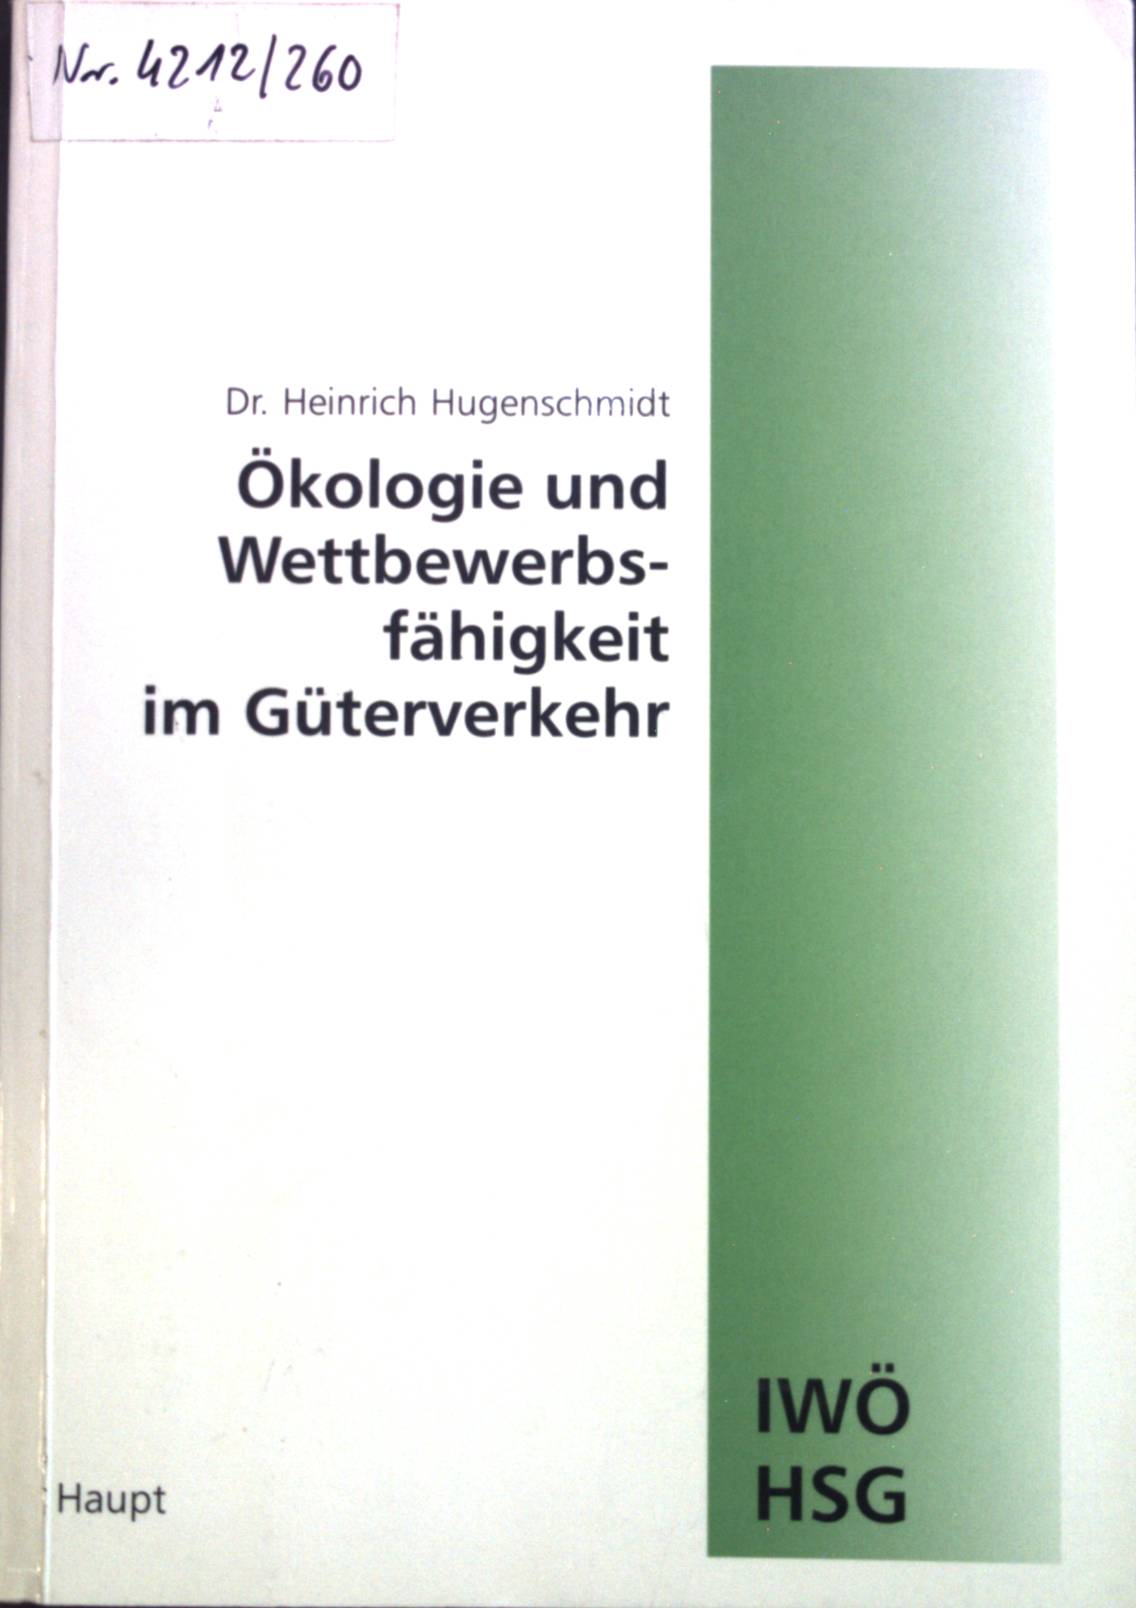 Ökologie und Wettbewerbsfähigkeit im Güterverkehr. Schriftenreihe Wirtschaft und Ökologie ; Band. 4 - Hugenschmidt, Heinrich